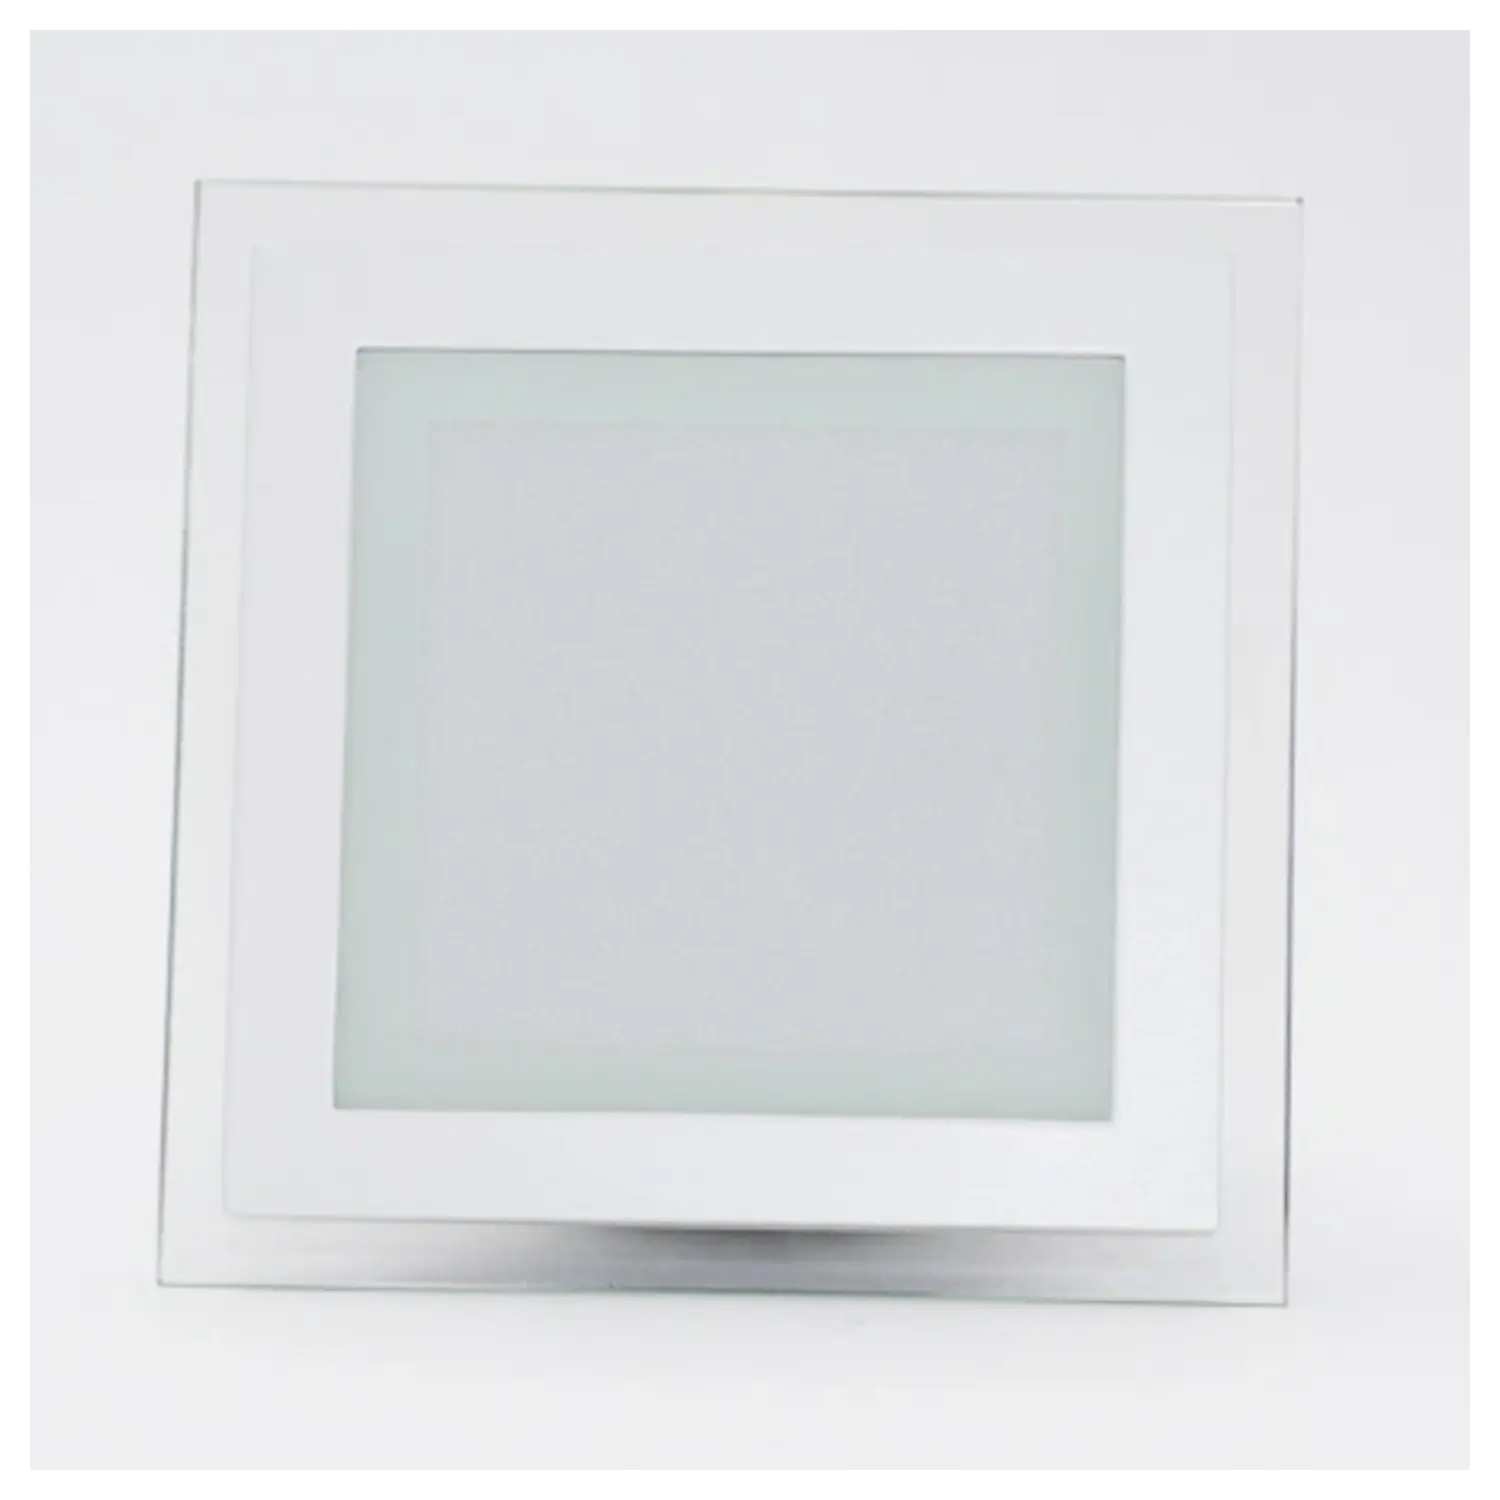 immagine del prodotto mini pannelo led cornice vetro incasso 18 watt bianco caldo tondo